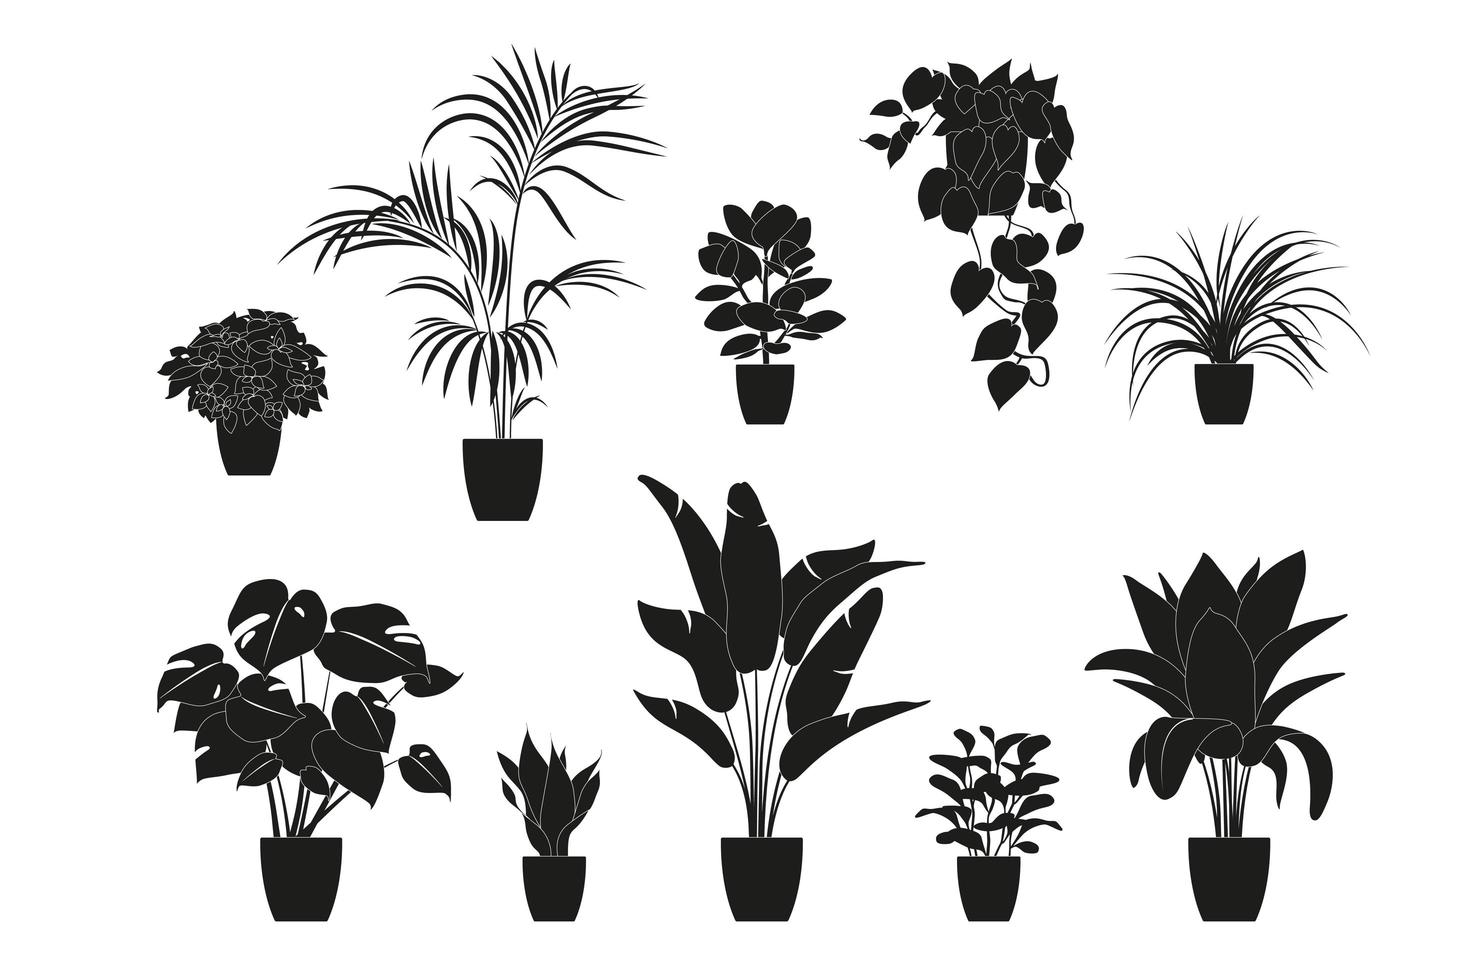 Sammlung Silhouetten von Zimmerpflanzen in schwarzer Farbe. Topfpflanzen isoliert auf weiss. Set grüne tropische Pflanzen. trendige Wohnkultur mit Zimmerpflanzen, Pflanzgefäßen, tropischen Blättern. vektor